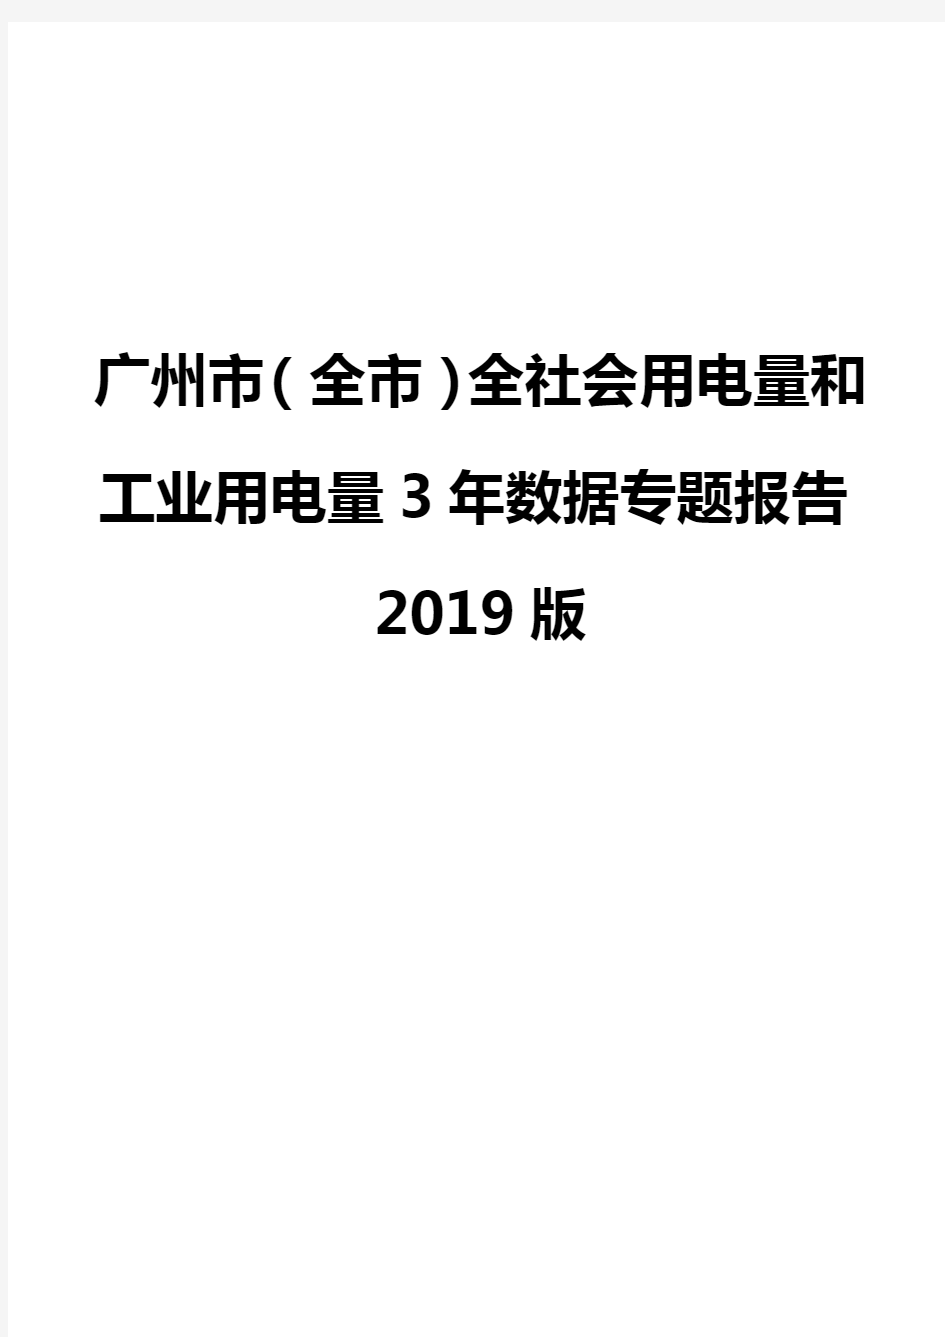 广州市(全市)全社会用电量和工业用电量3年数据专题报告2019版